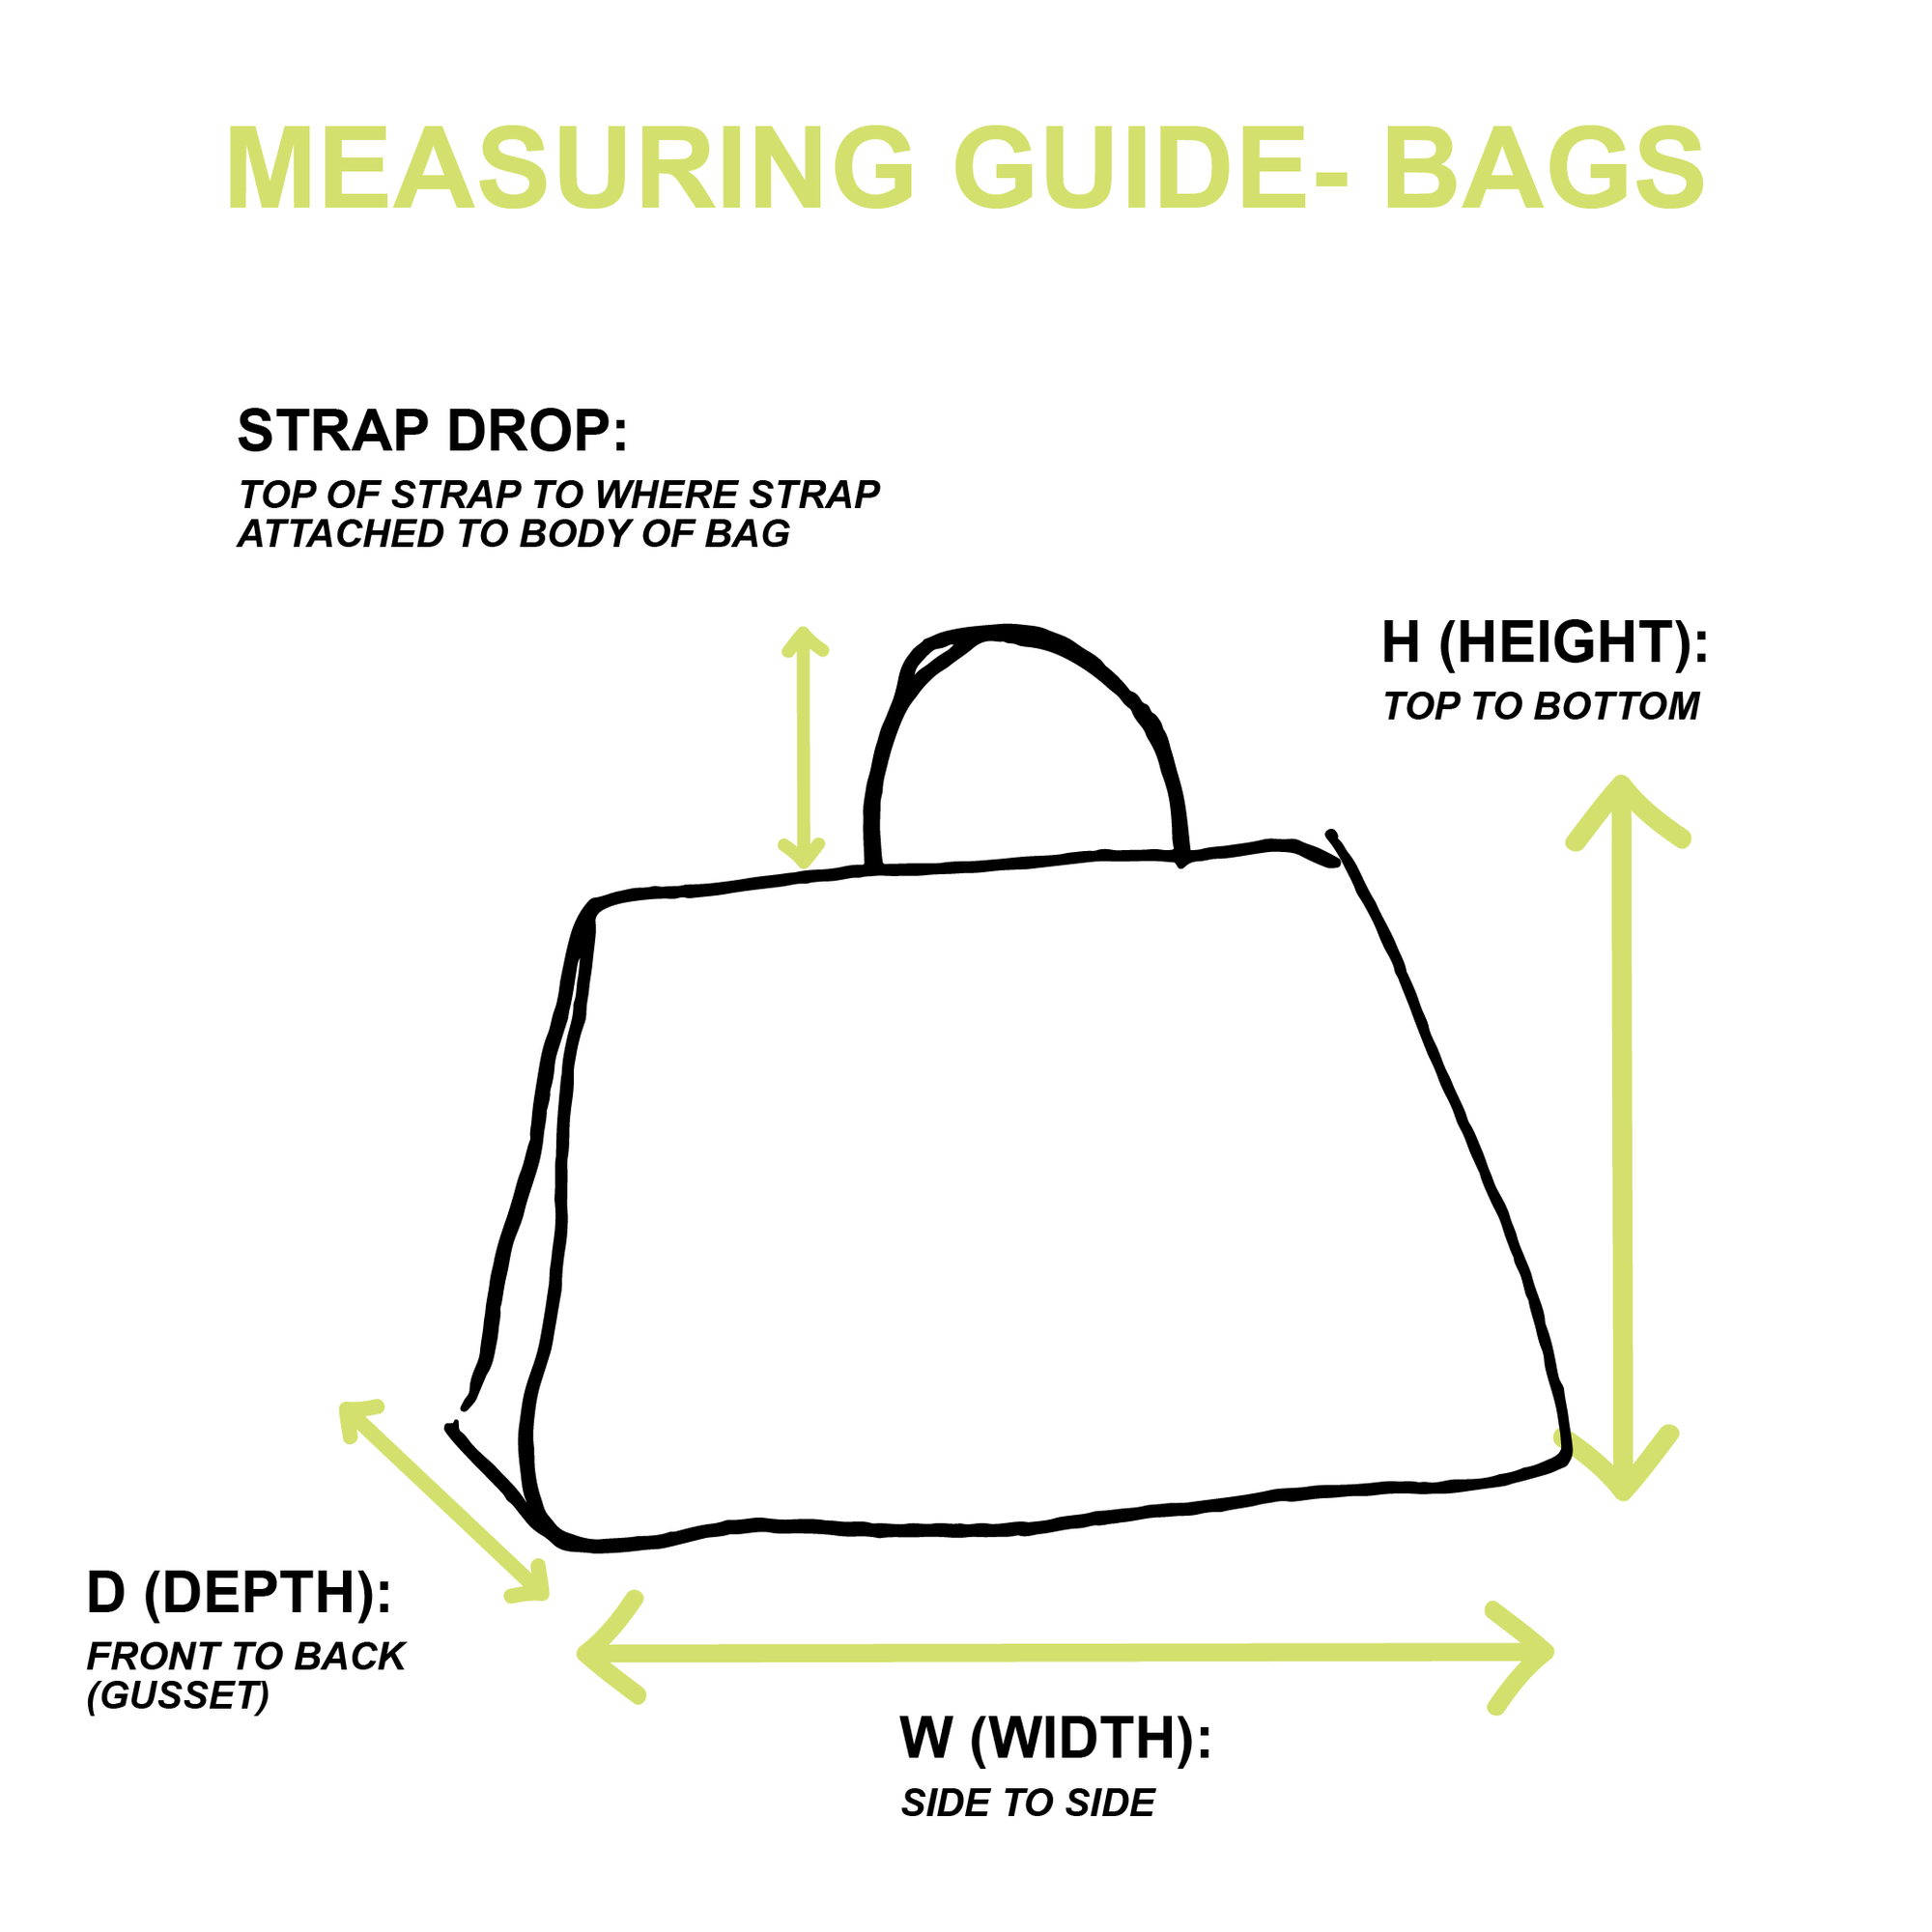 Chanel Tan Suede Mini Shoulder Bag - Handbags